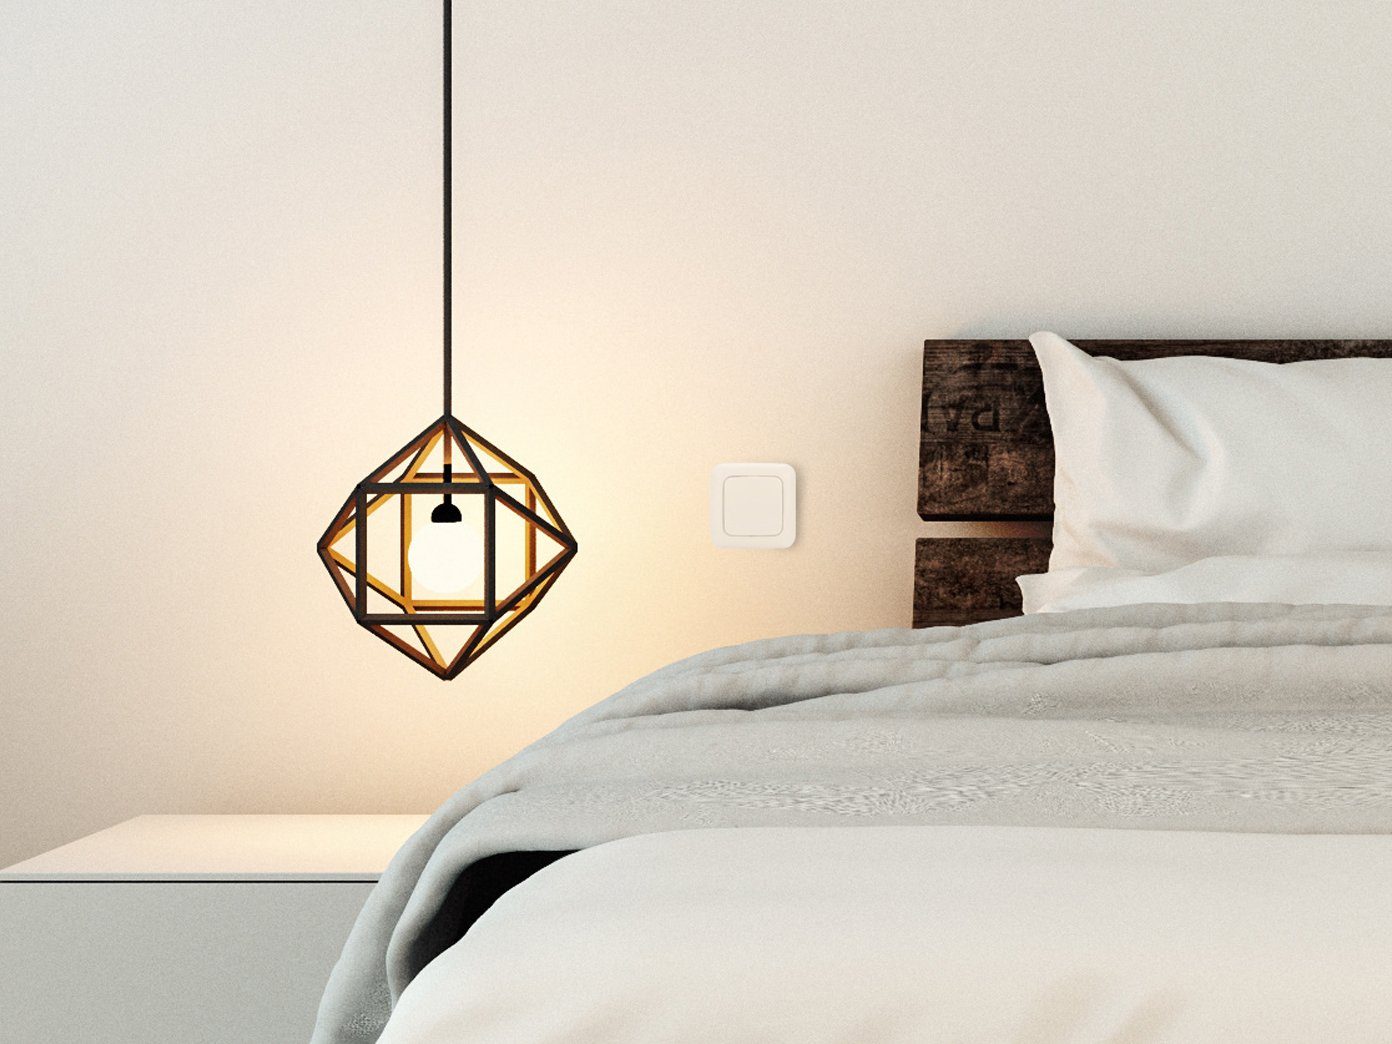 Funk Licht-Funksteuerung, Einbaudimmer Schalter Home Mini & smartwares Wandschalter Taster Set - Smart